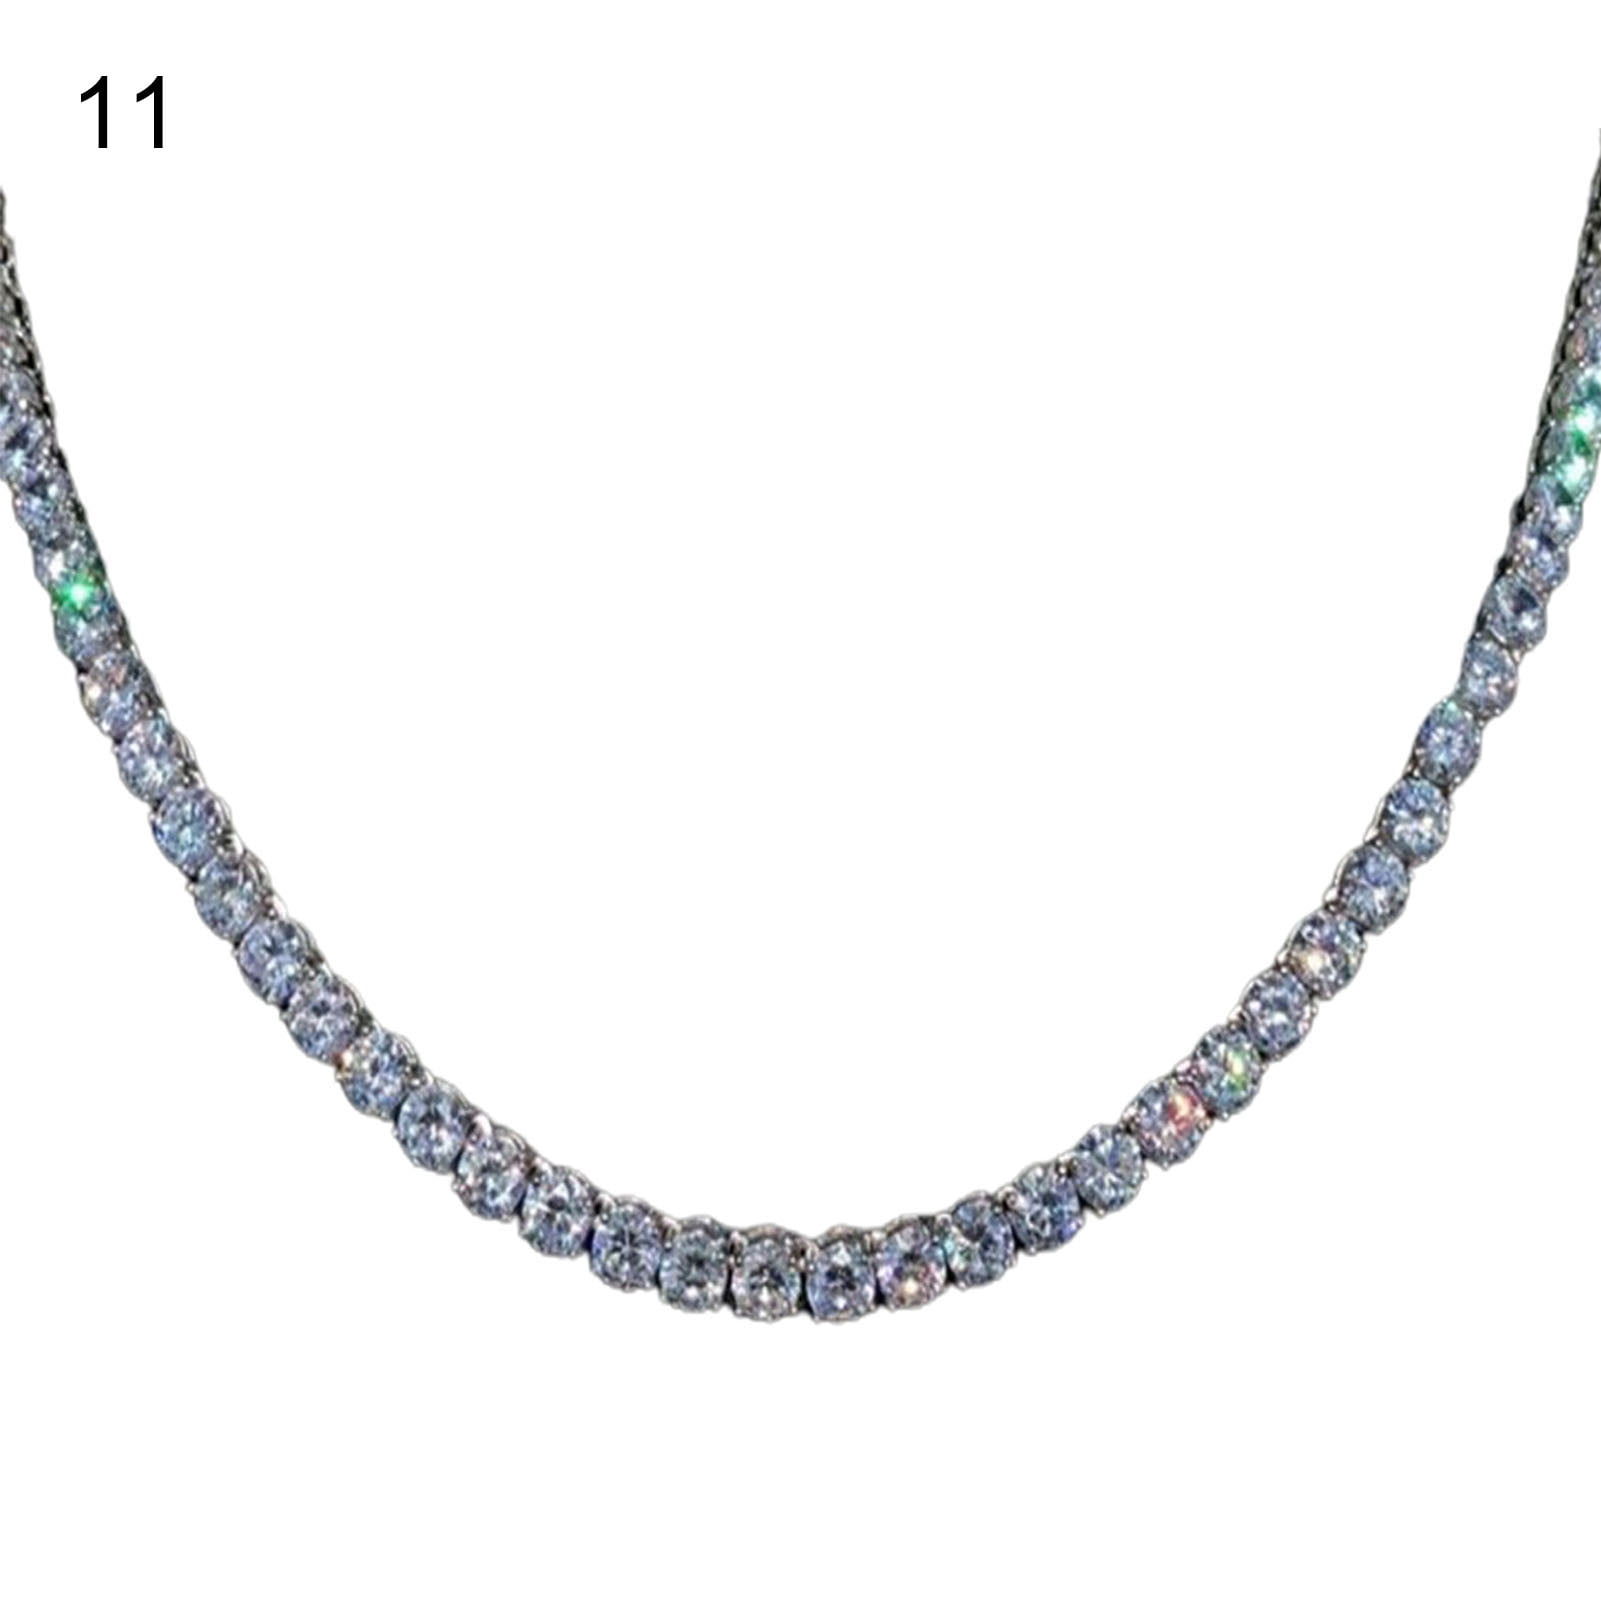 harmtty Chain Necklace Shiny Rhinestones Jewelry Kuwait